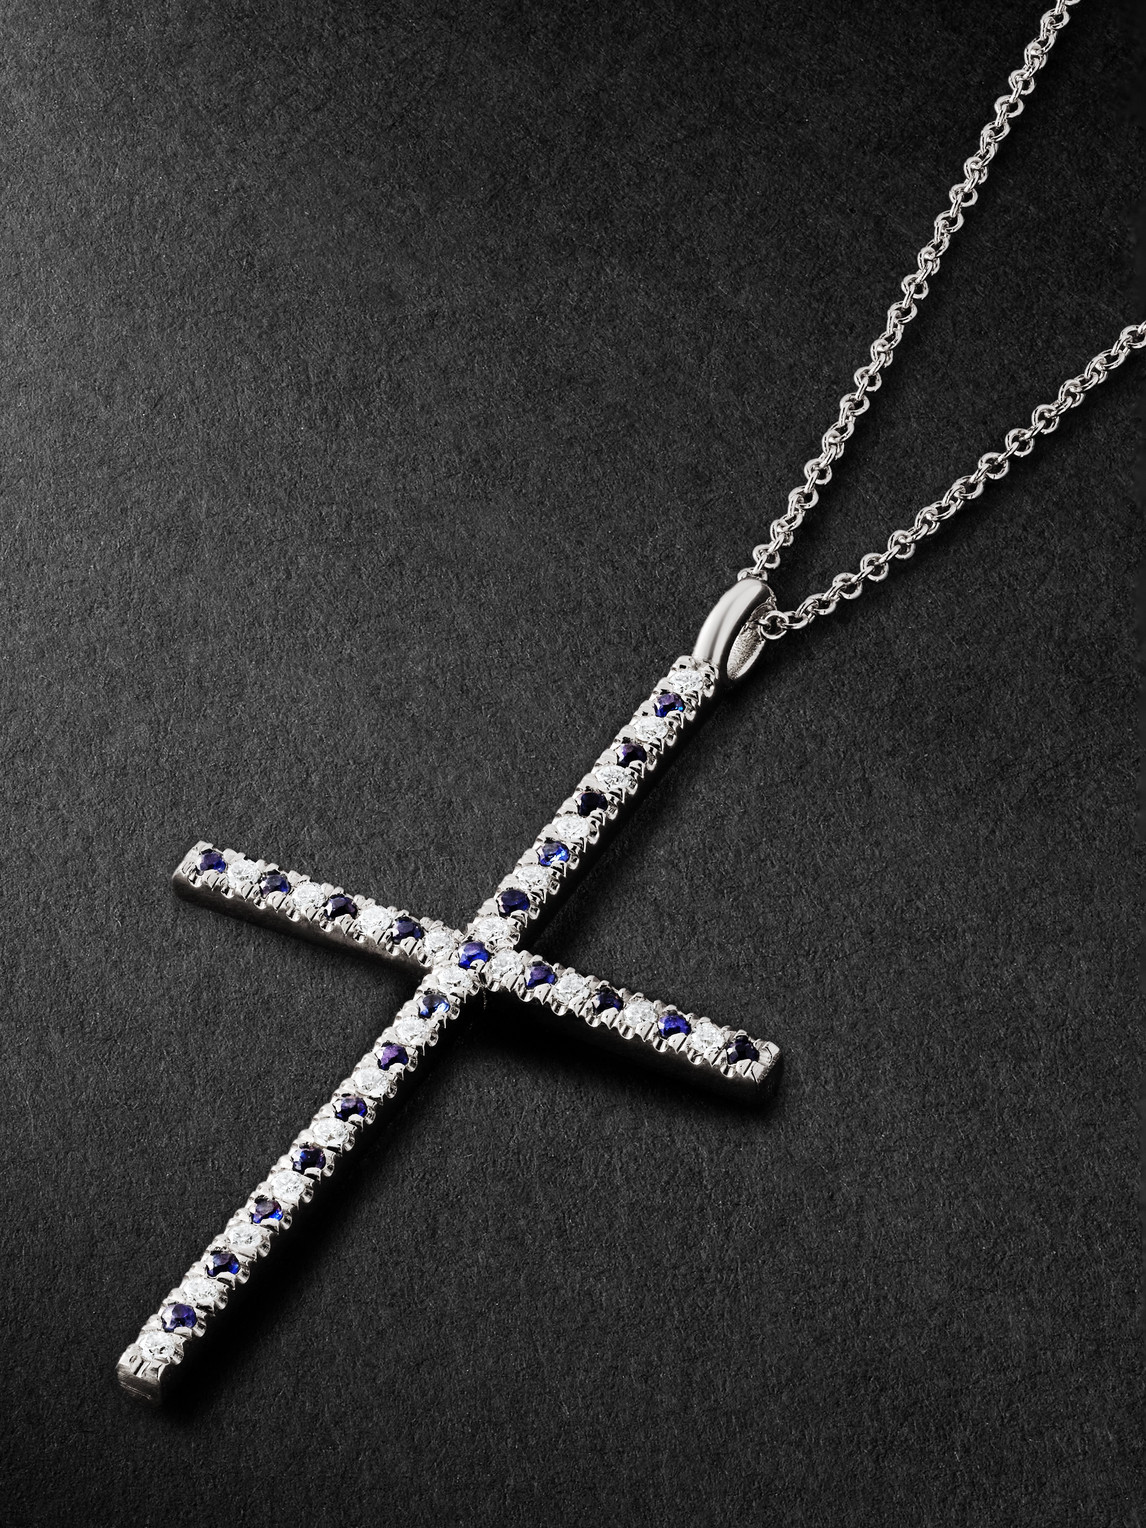 Shop Ileana Makri Stripe Cross White Gold, Diamond And Sapphire Pendant Necklace In Silver